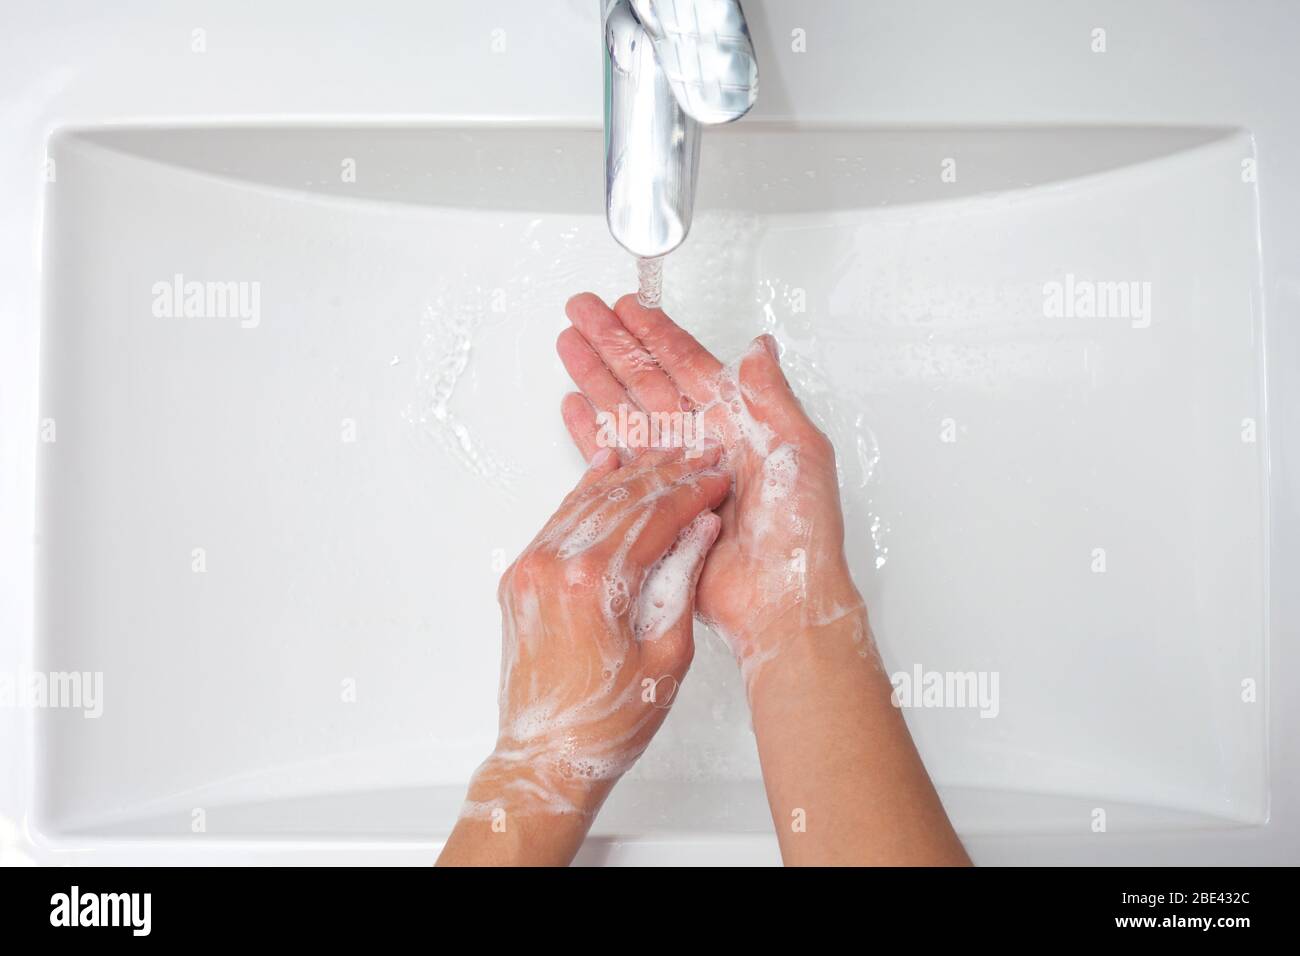 Lavage des mains. Une femme utilise du savon et se lave les mains sous le robinet. Concept d'hygiène. Vue rapprochée Banque D'Images